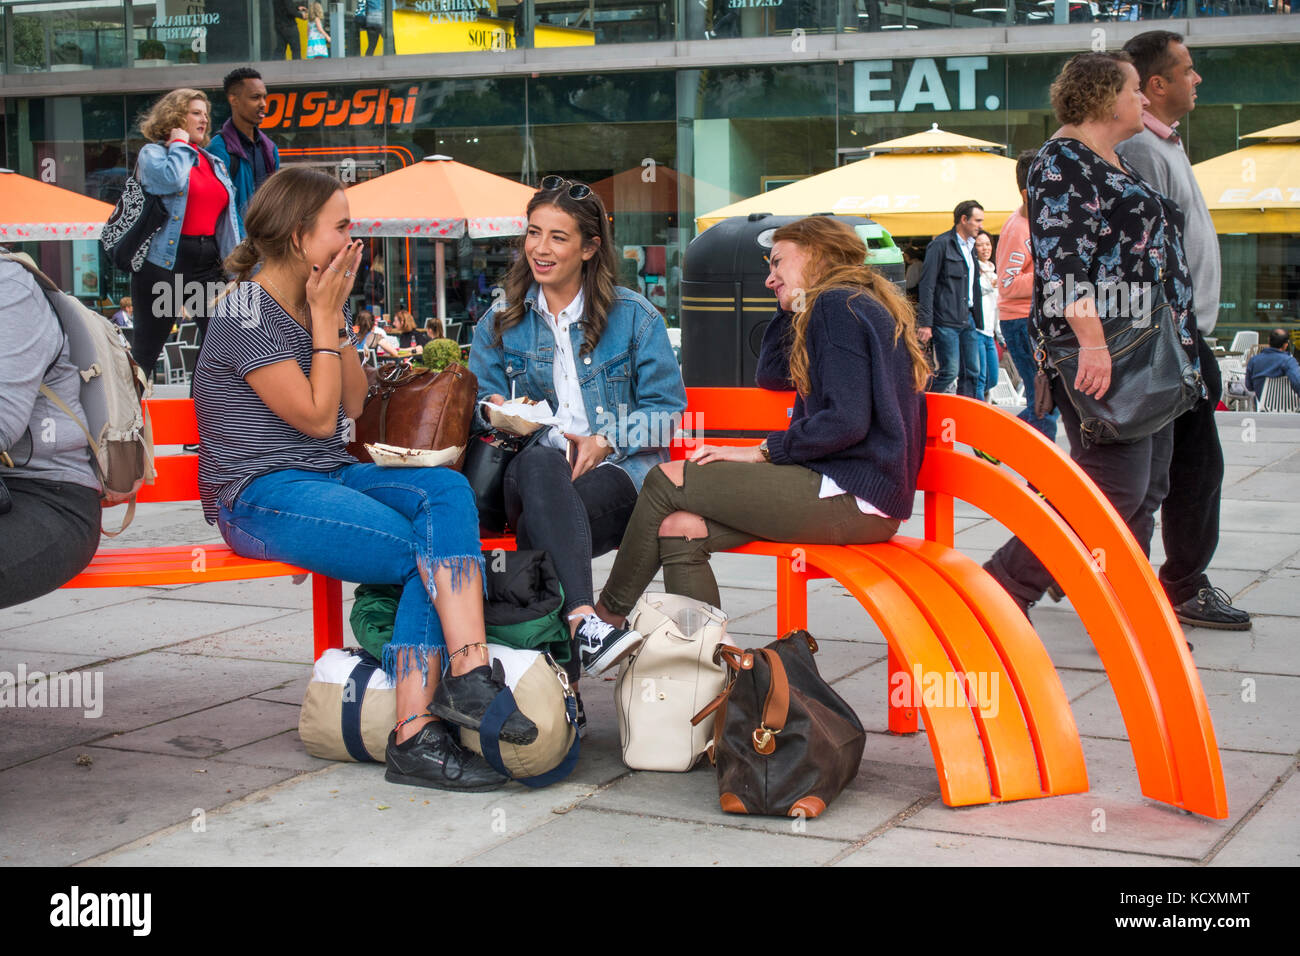 Trois jeunes femmes amis assis sur un banc de couleur orange vif, avec des gens qui passent, sur une longue rive sud, Londres, Angleterre, Royaume-Uni. Banque D'Images